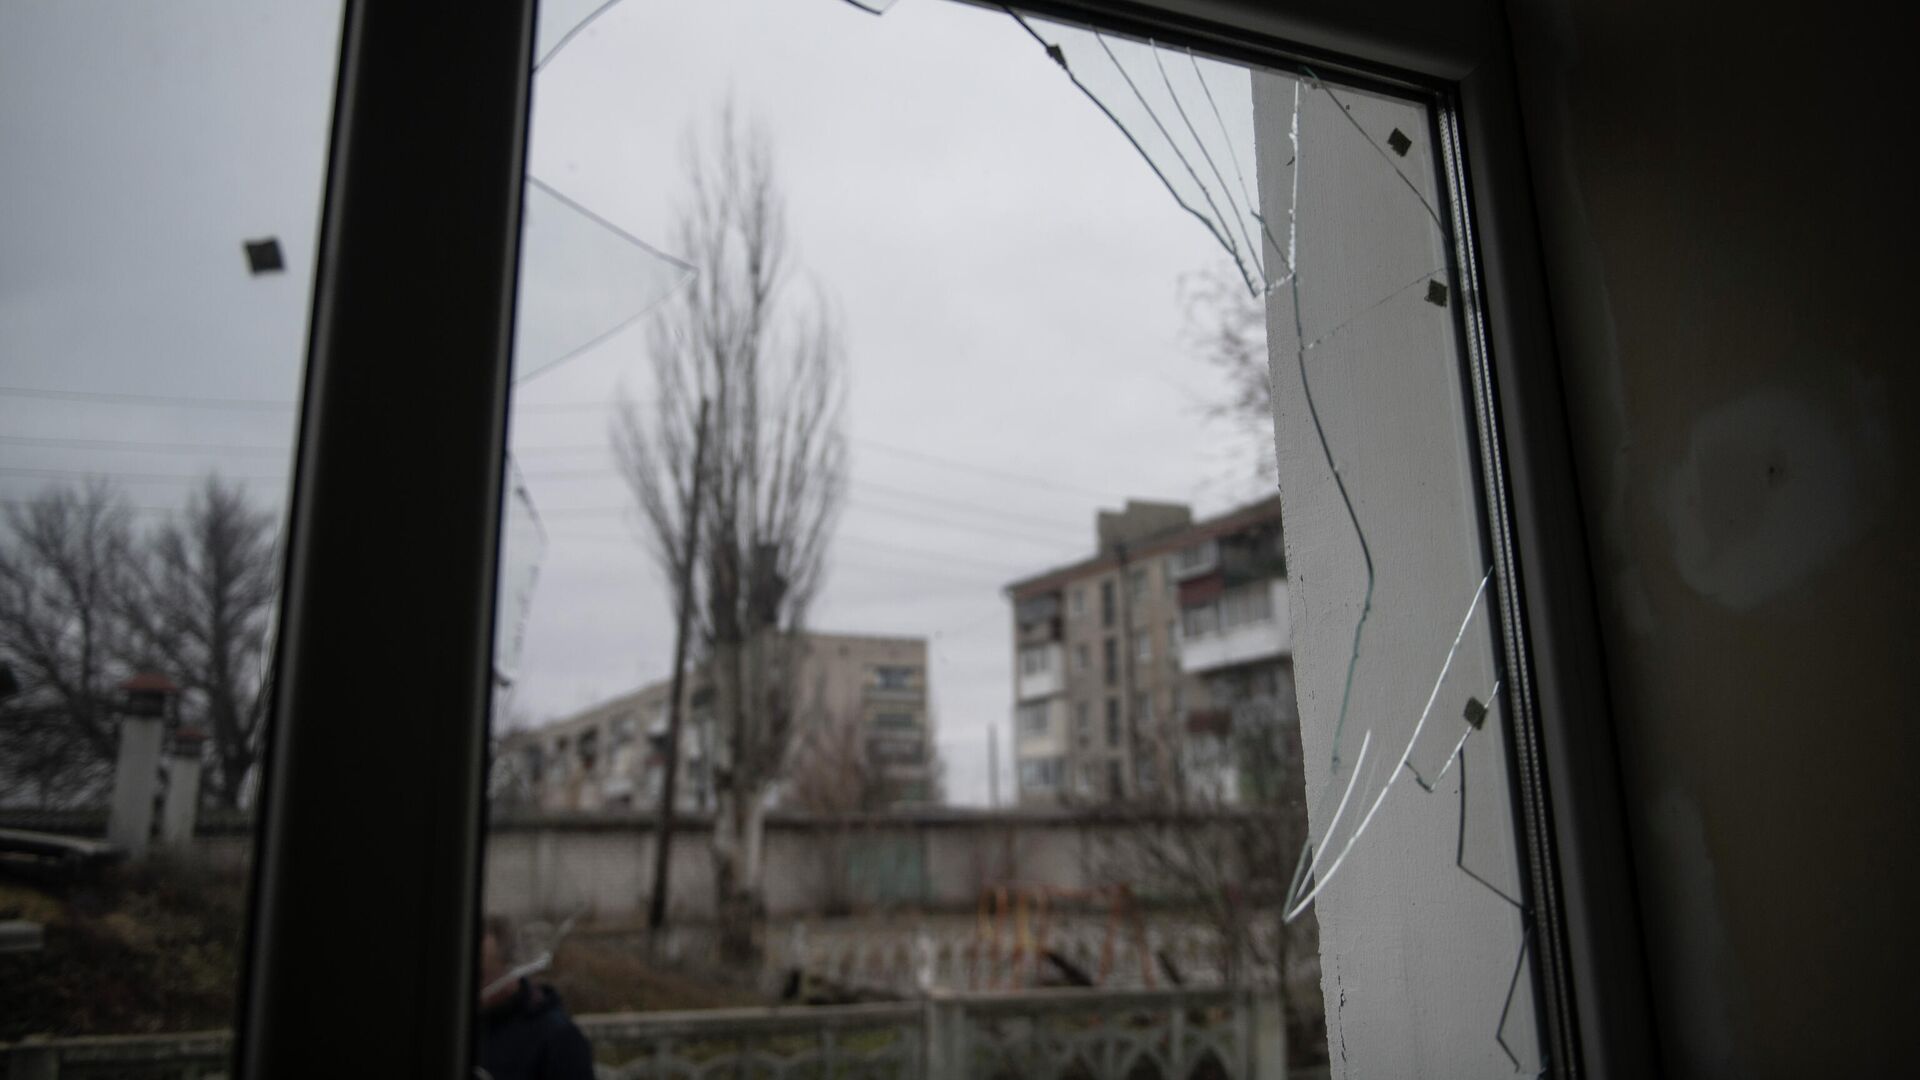 Разбитое окно в детском саду в станице Луганской, пострадавшем в результате обстрела - РИА Новости, 1920, 02.03.2022